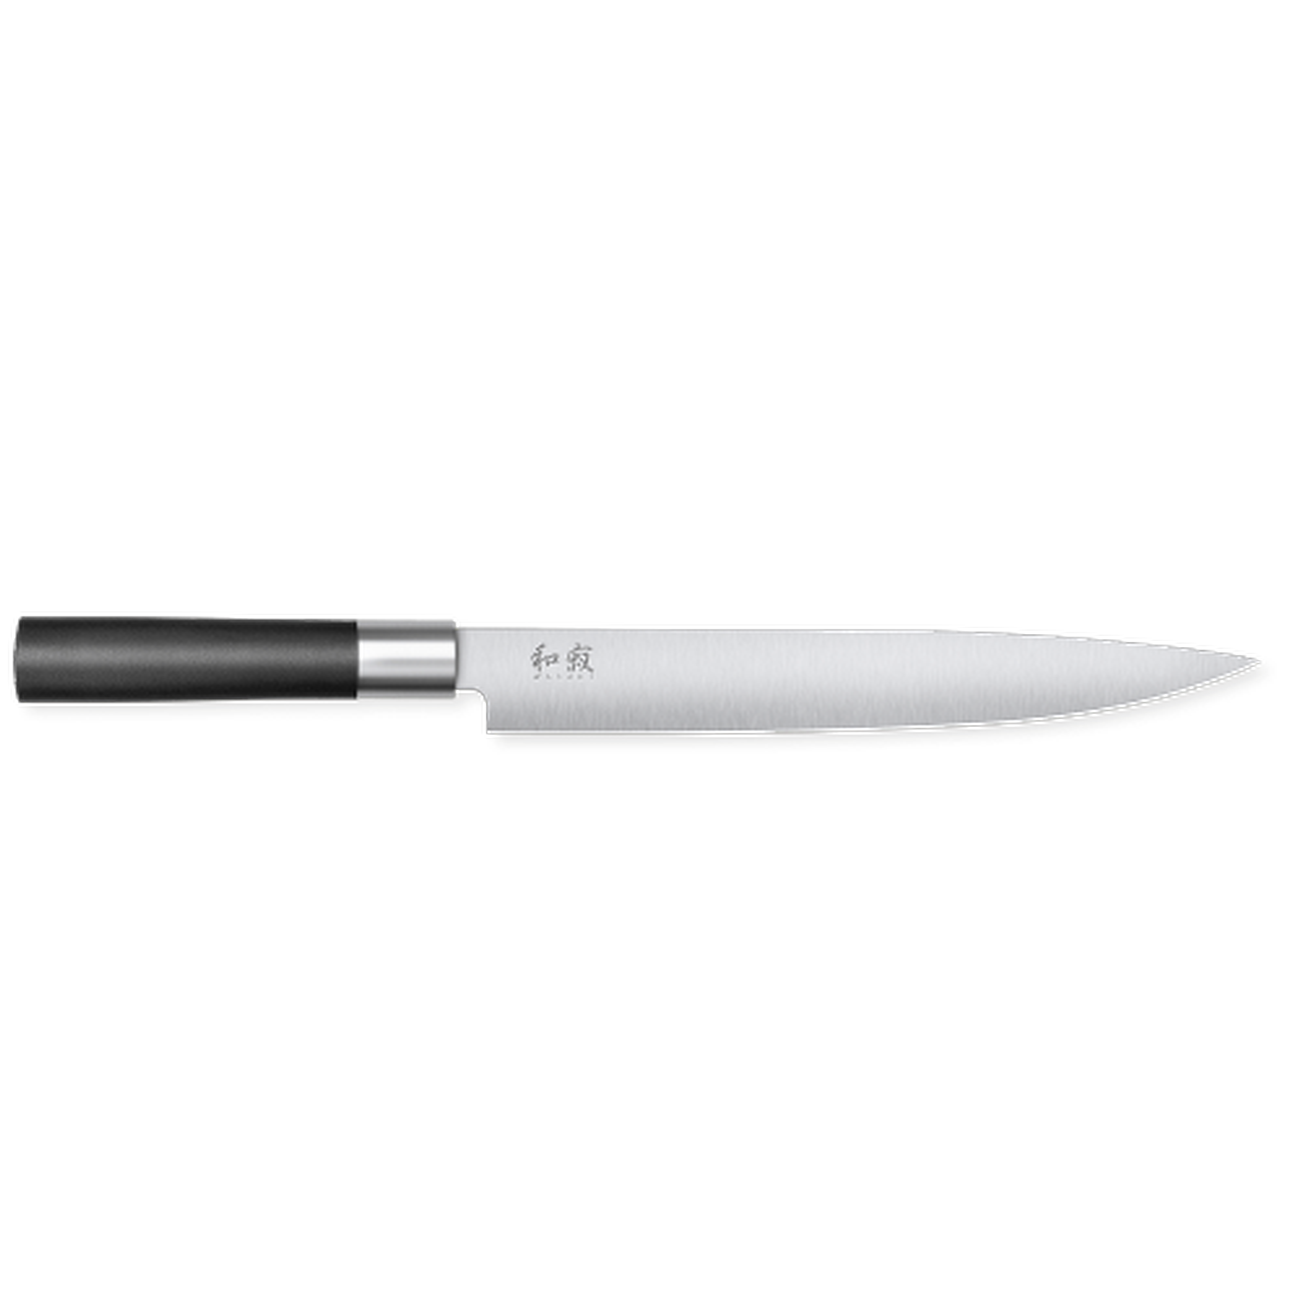 kai-wasabi-slicing-knife-9in-23cm - Kai Wasabi Slicing Knife 9